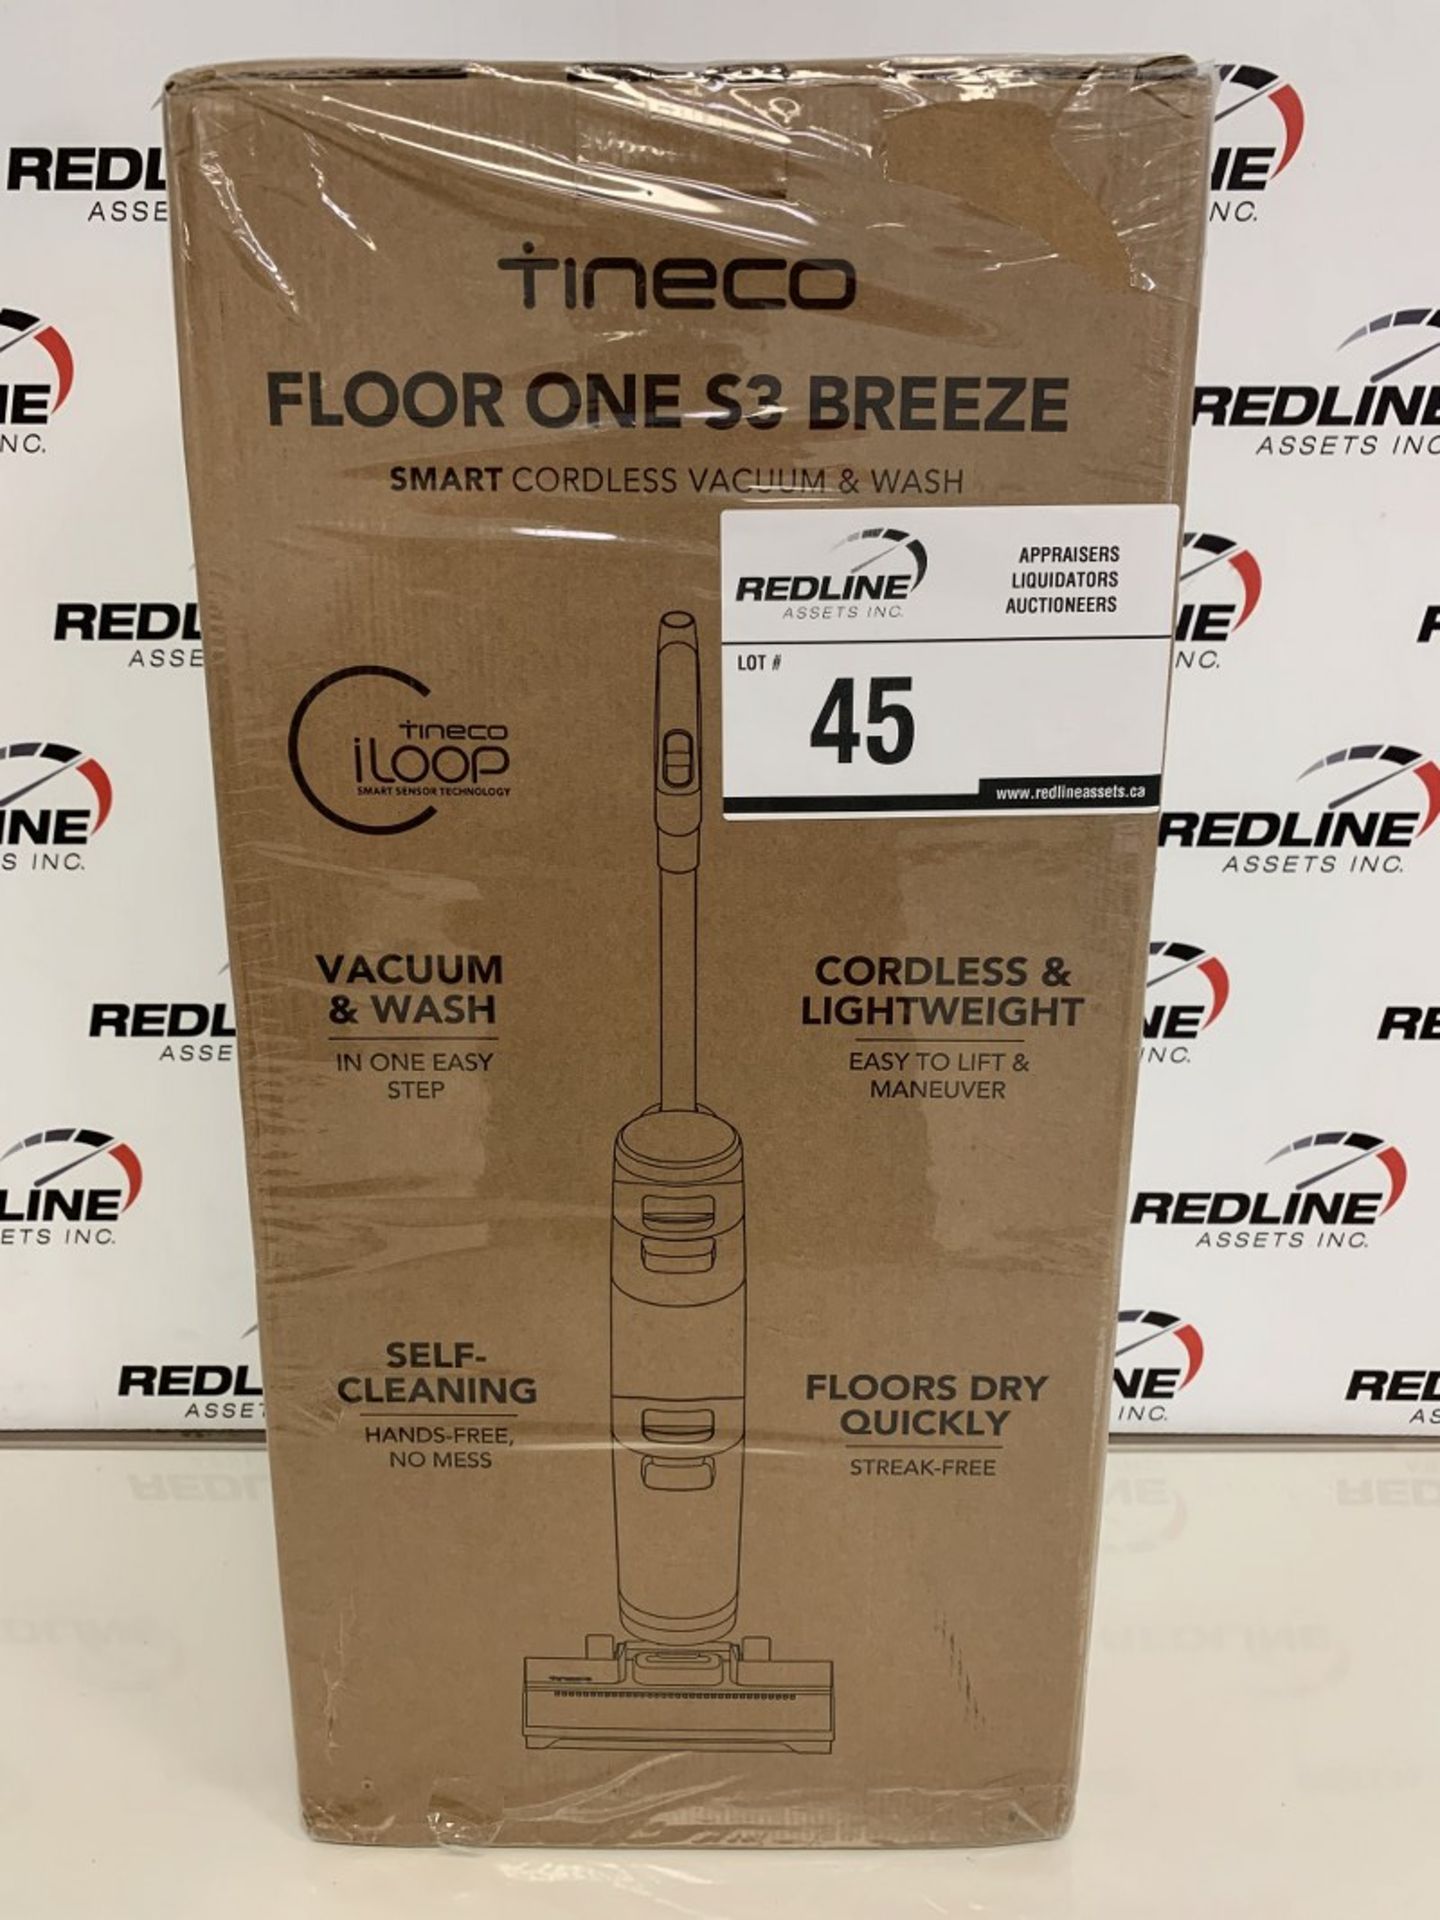 Tineco - Floor One S3 Breeze - Smart Cordless Vacuum